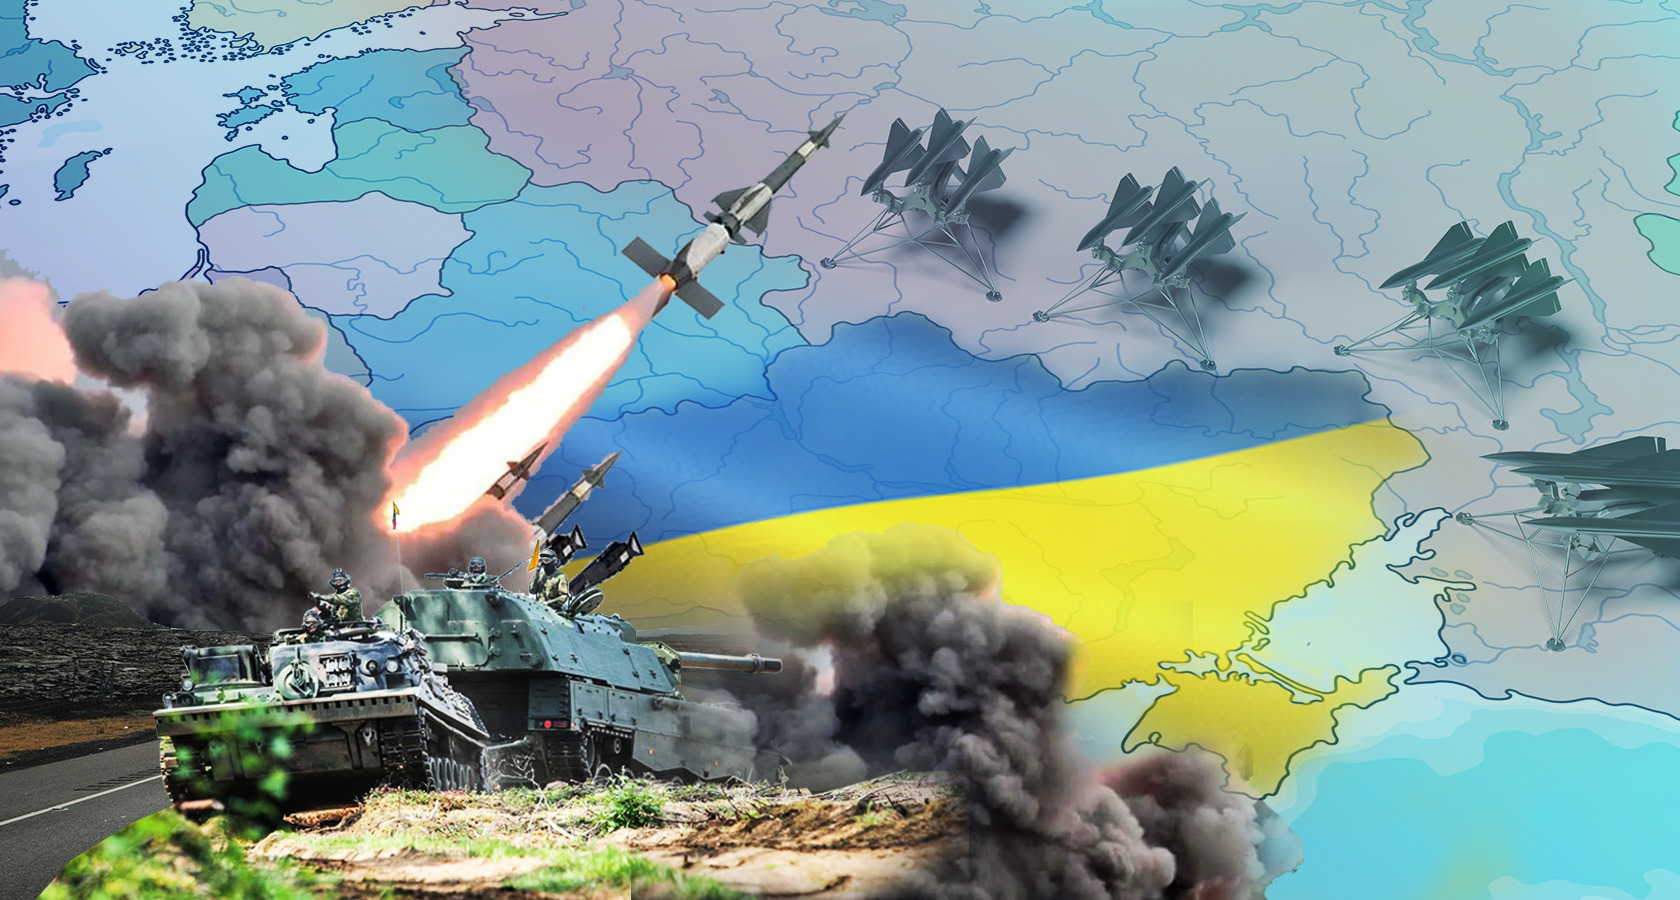 Тяжелая артиллерия Запада даст Украине победу, РФ без экспорта нефти. Обзор западных медиа - Фото